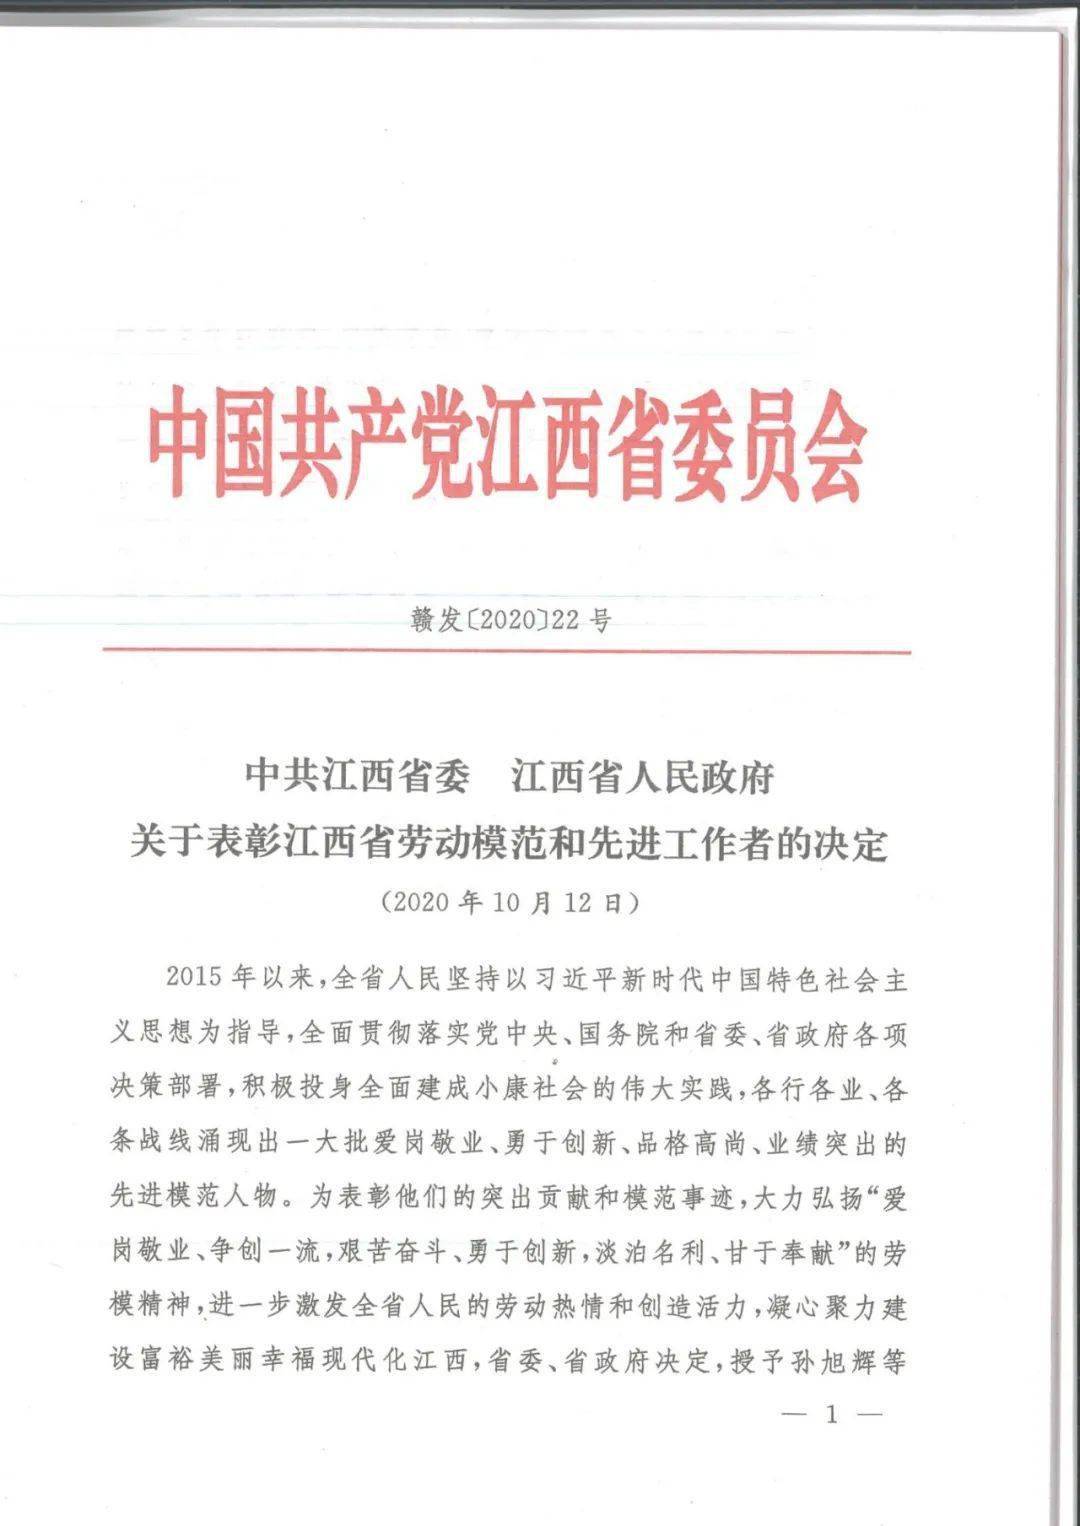 区域首次 上海建工江西建设胡剑峰荣获 江西省劳动模范 称号